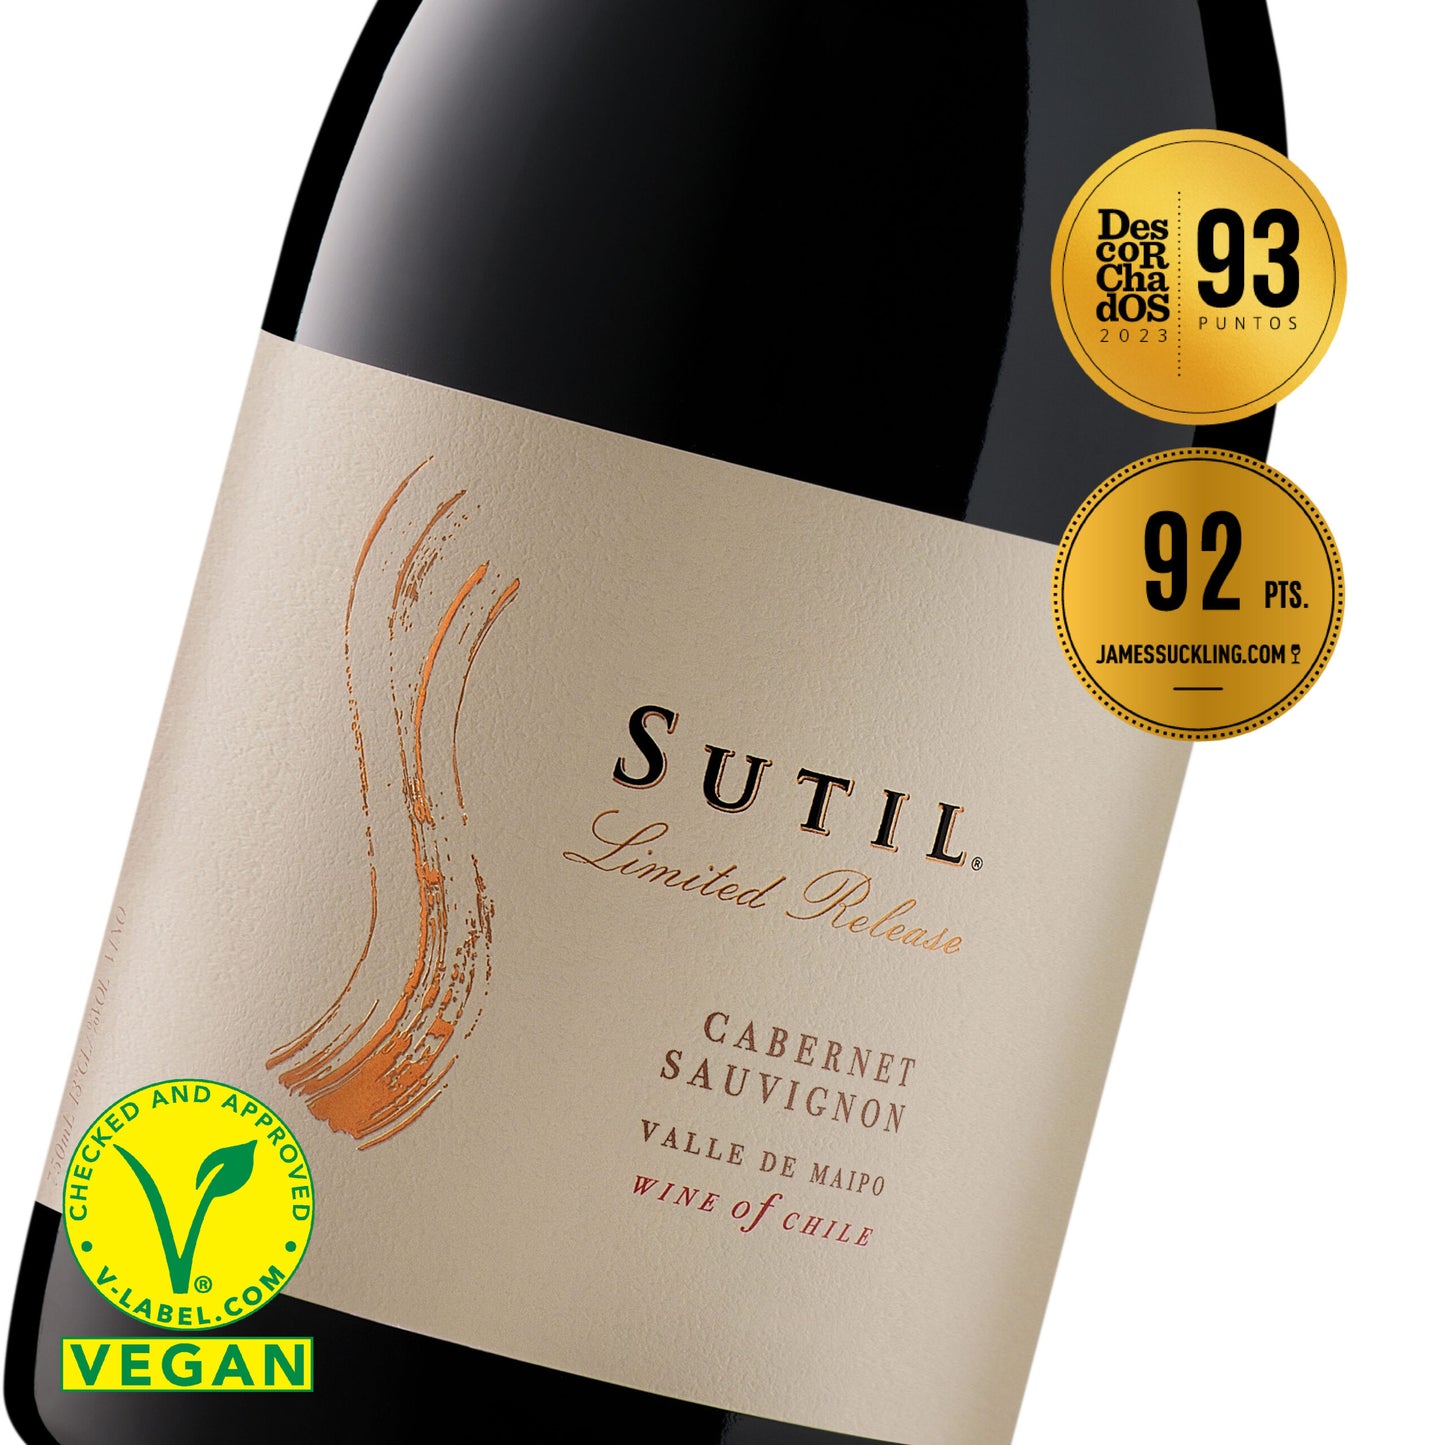 Sutil Limited Release Cabernet Sauvignon 6x750ml